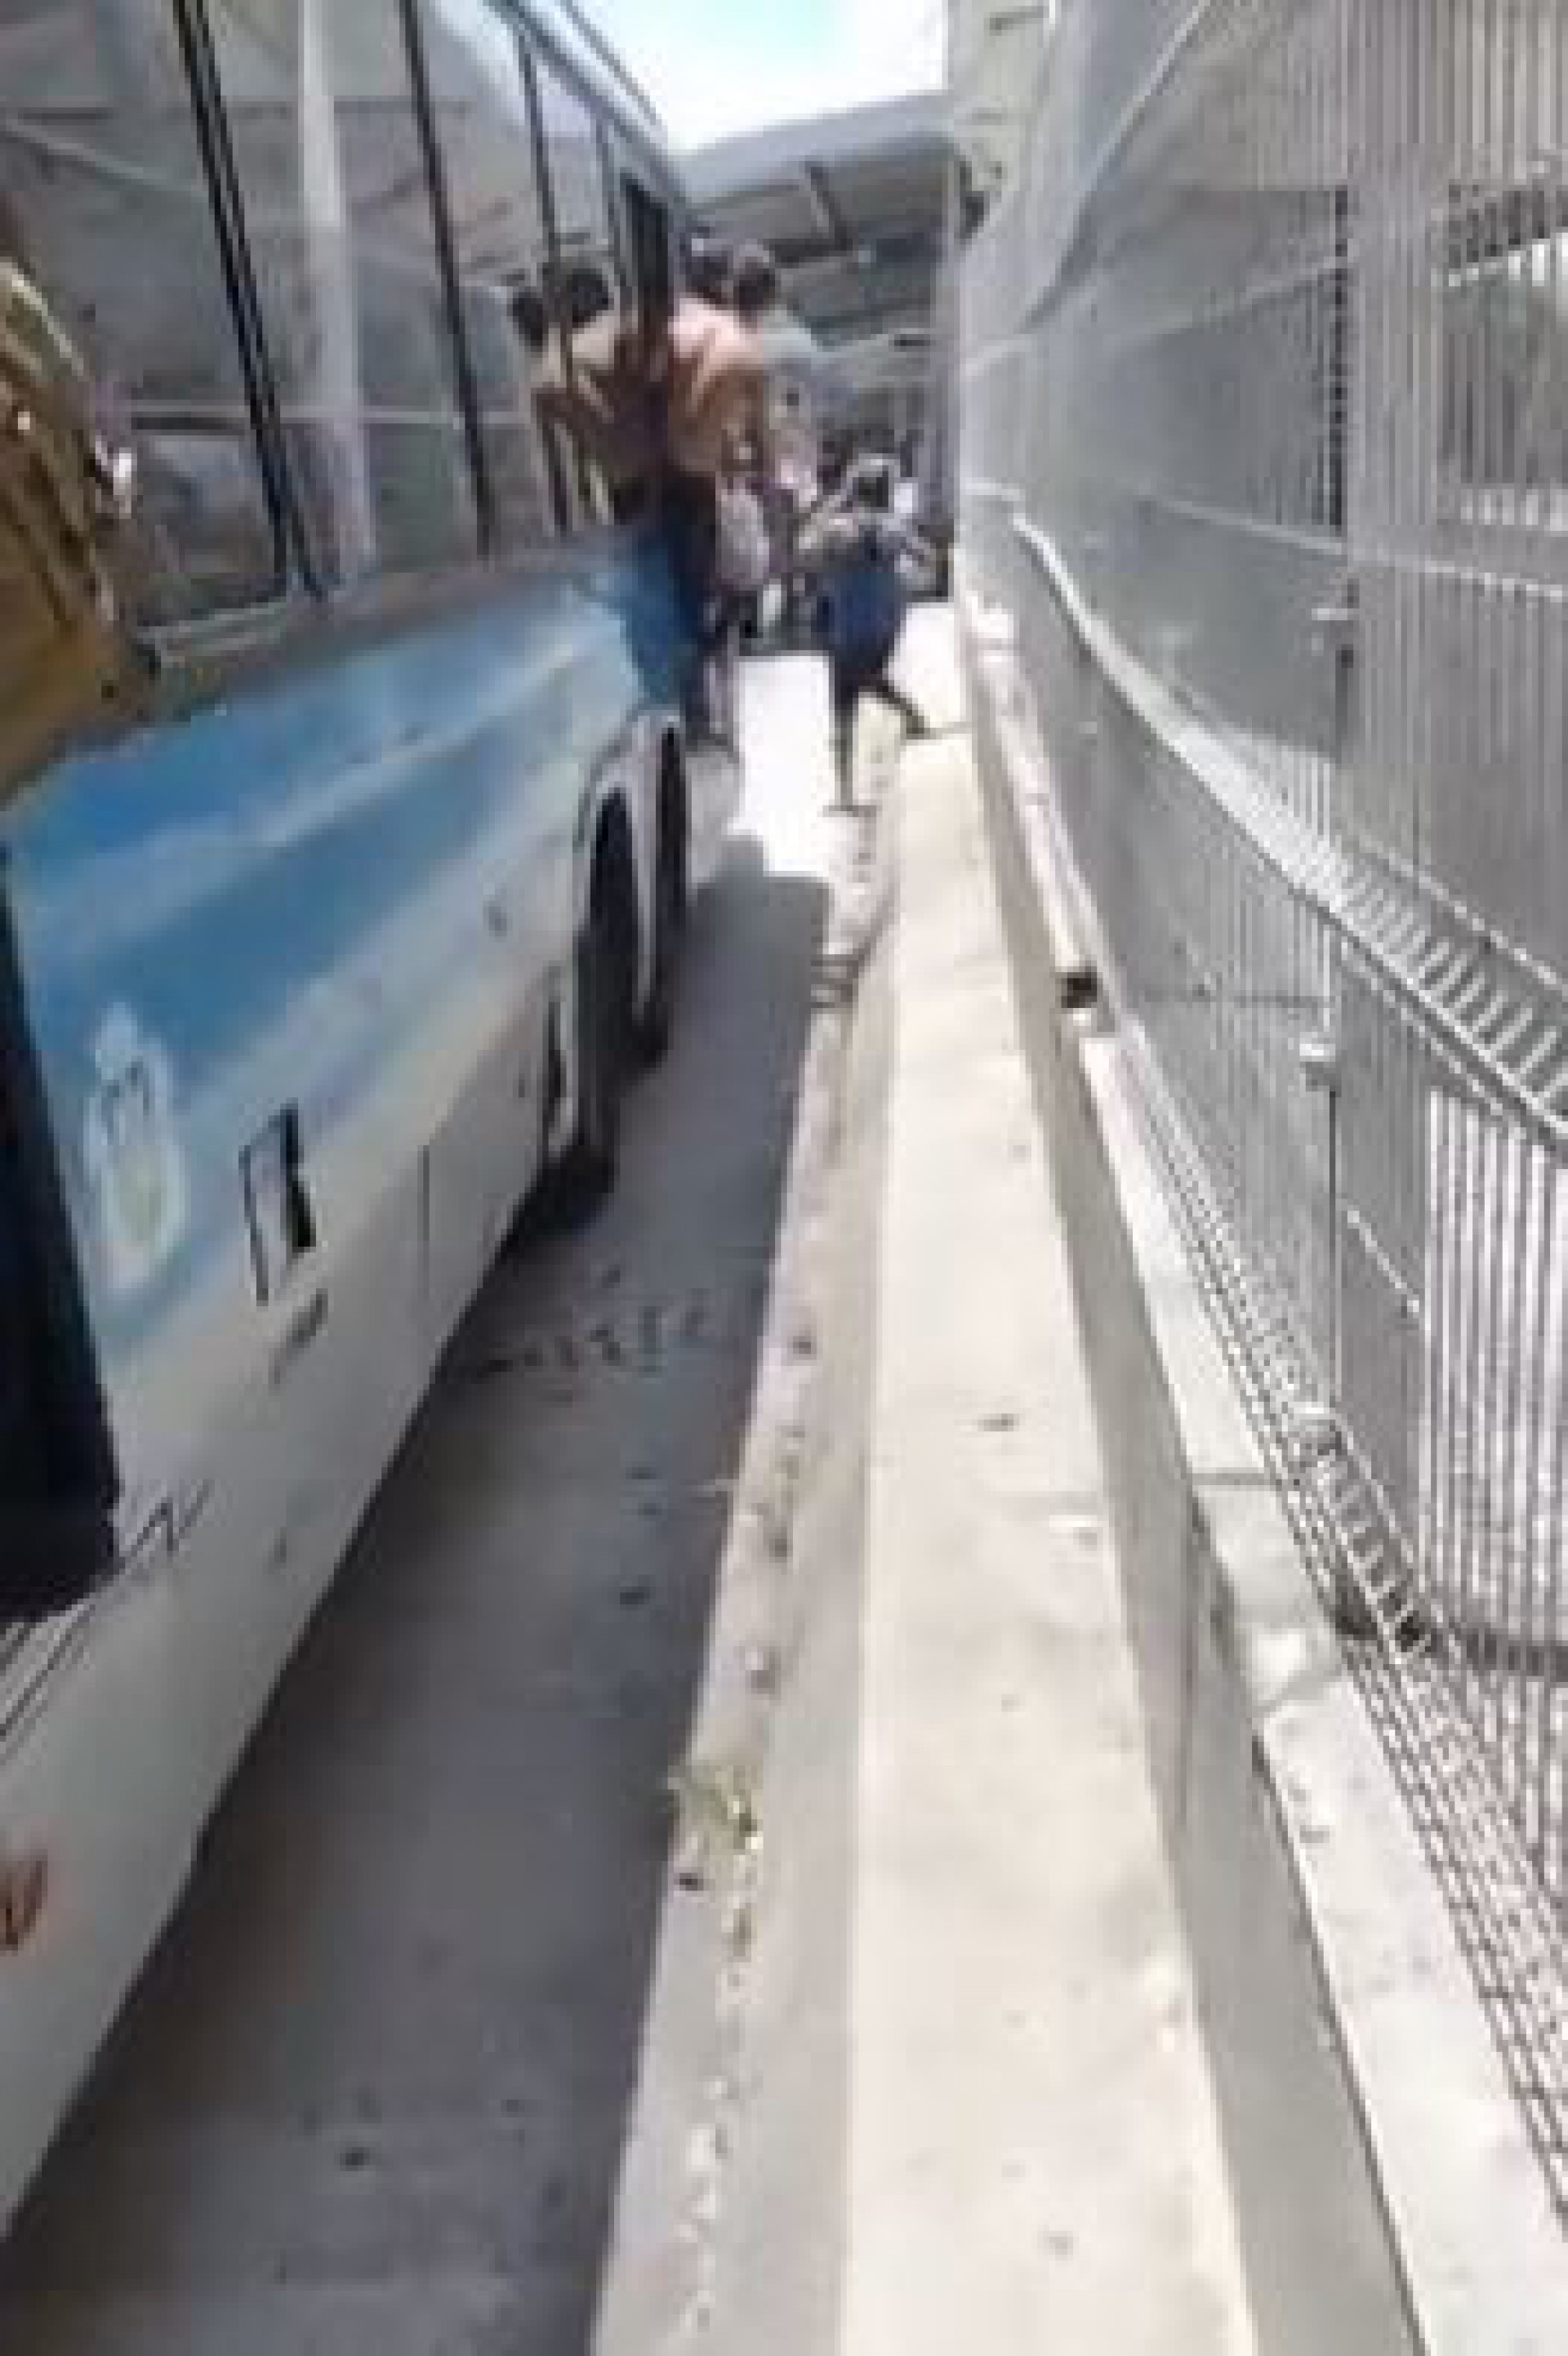 Passageiros relataram que a vítima tentou embarcar com o BRT em movimento